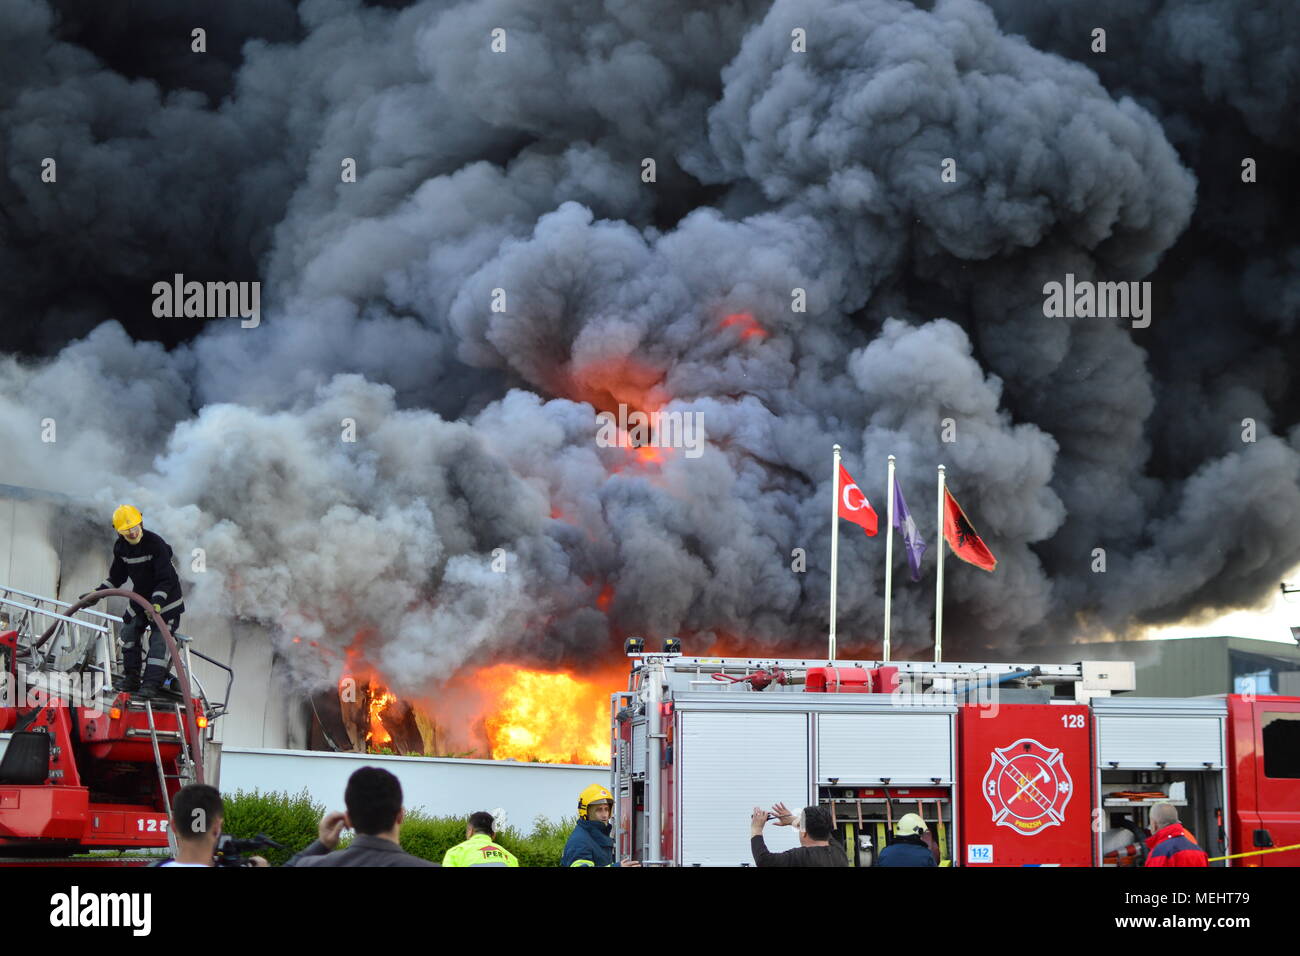 Kashar, Tirana-Albania, 22. April 2018. Riesige Feuer brennt vollständig ein Recyclingunternehmen in Kashar, 10 Brand-Einheiten, die bereits auf dem Szene kämpfen, um die Flammen zu löschen. Keine Verletzungen oder Todesfälle gemeldet werden Credit: Antonio Cakshiri/Alamy leben Nachrichten Stockfoto